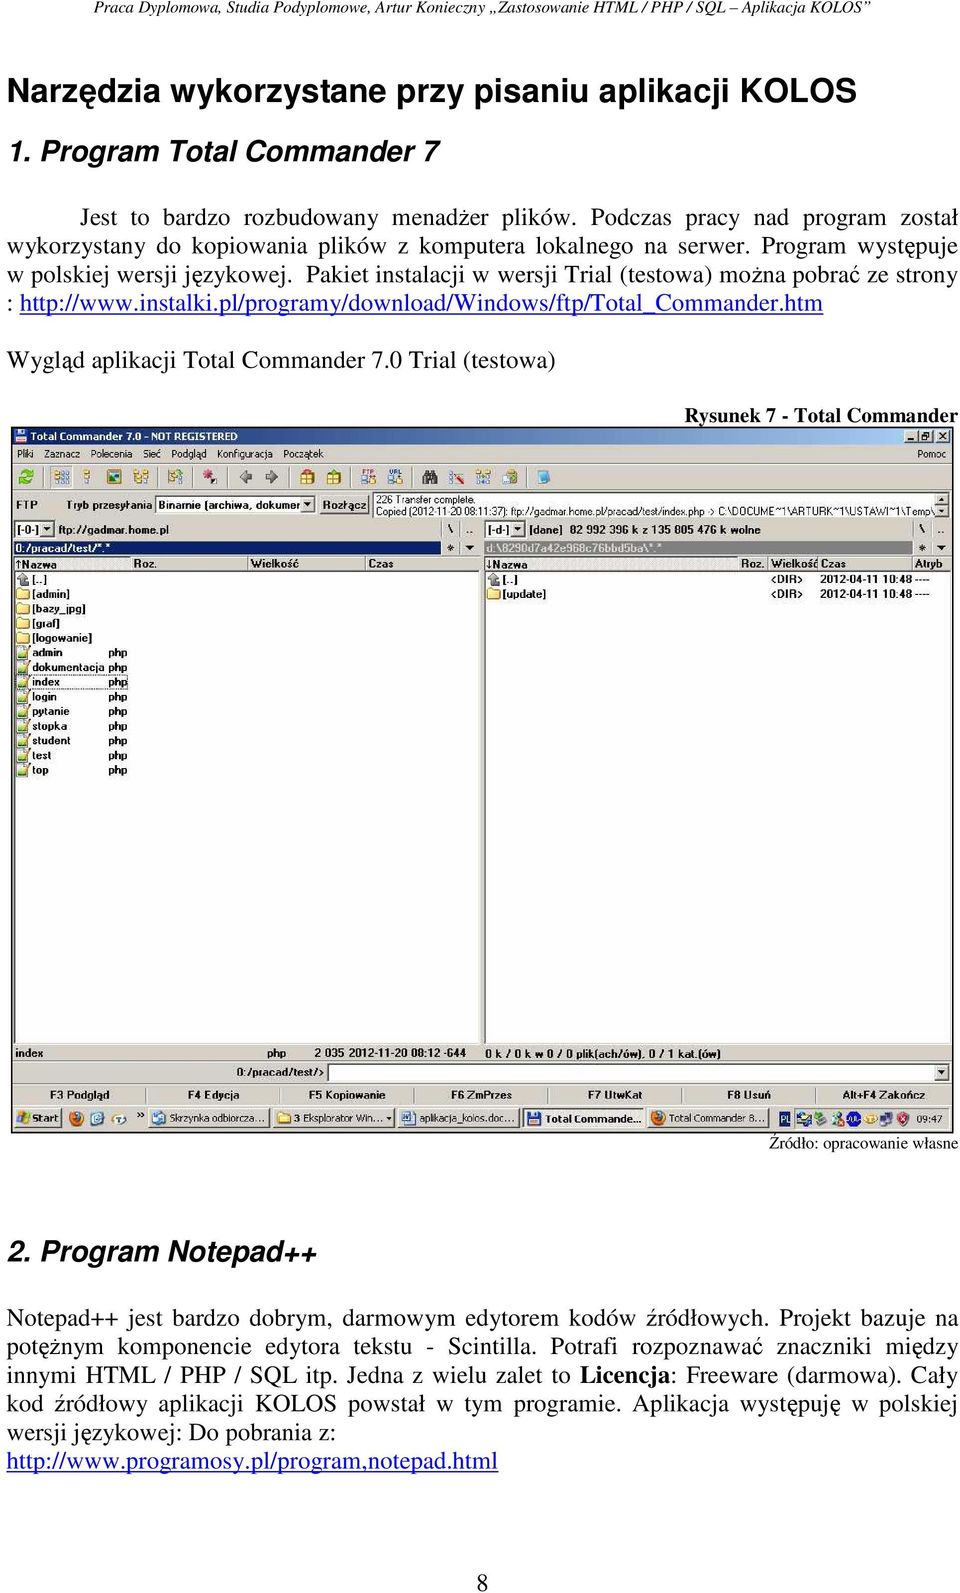 Pakiet instalacji w wersji Trial (testowa) można pobrać ze strony : http://www.instalki.pl/programy/download/windows/ftp/total_commander.htm Wygląd aplikacji Total Commander 7.